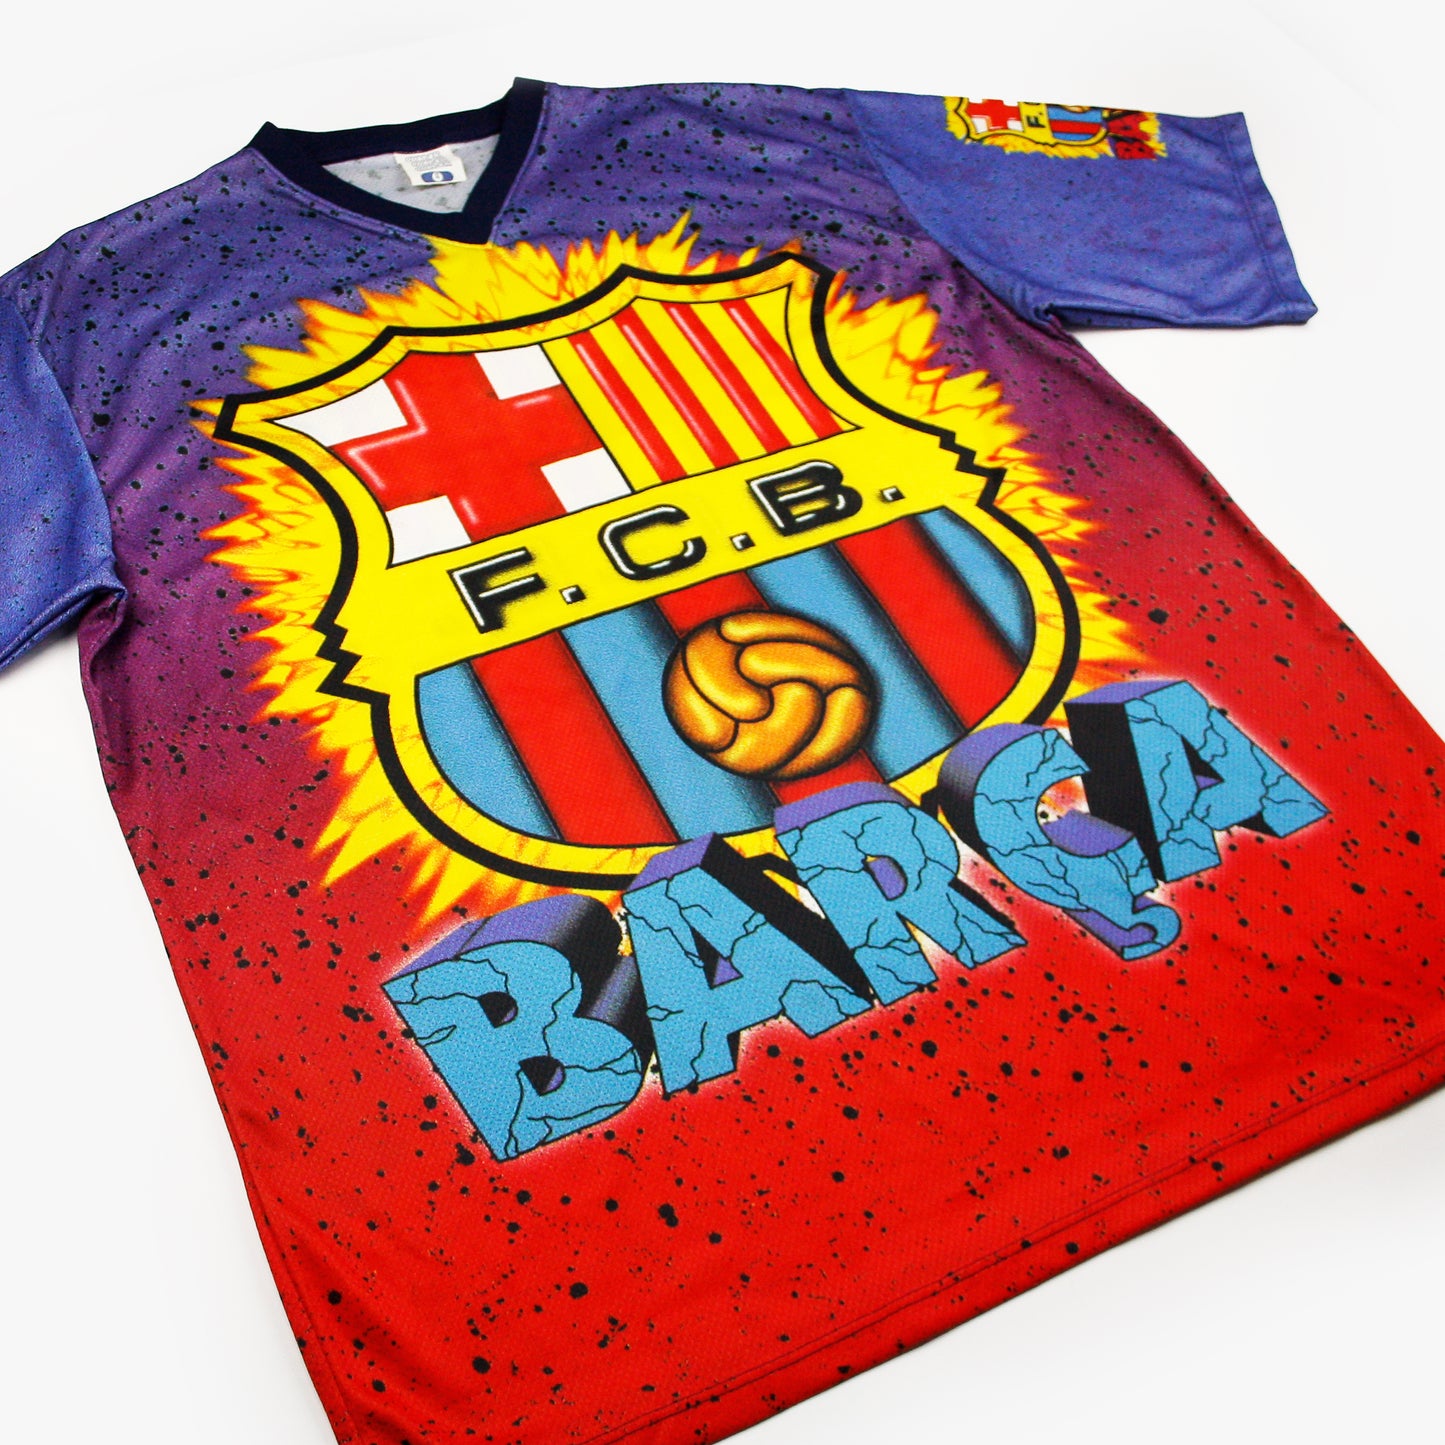 Barcelona 90s • Bootleg Shirt • XL